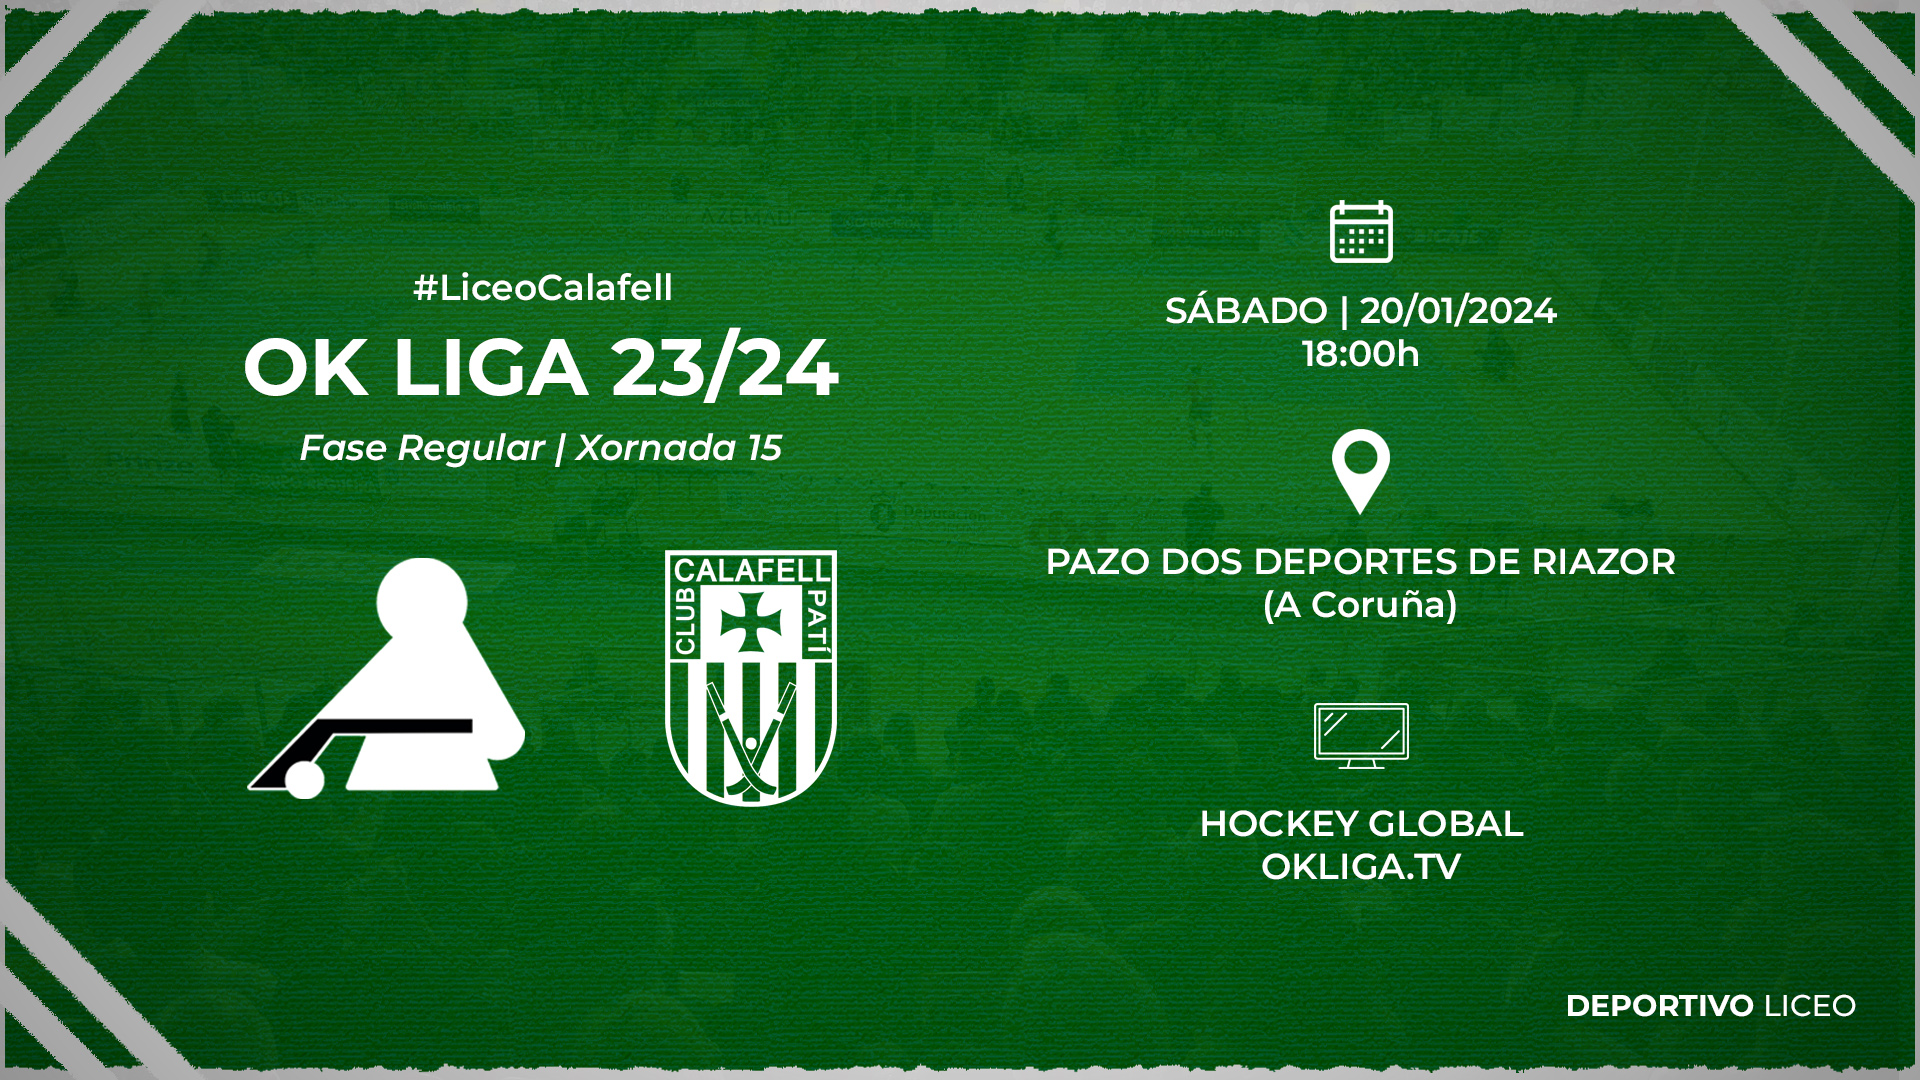 #LiceoCalafell | ENTRADAS para a xornada 15 da OK Liga 23/24